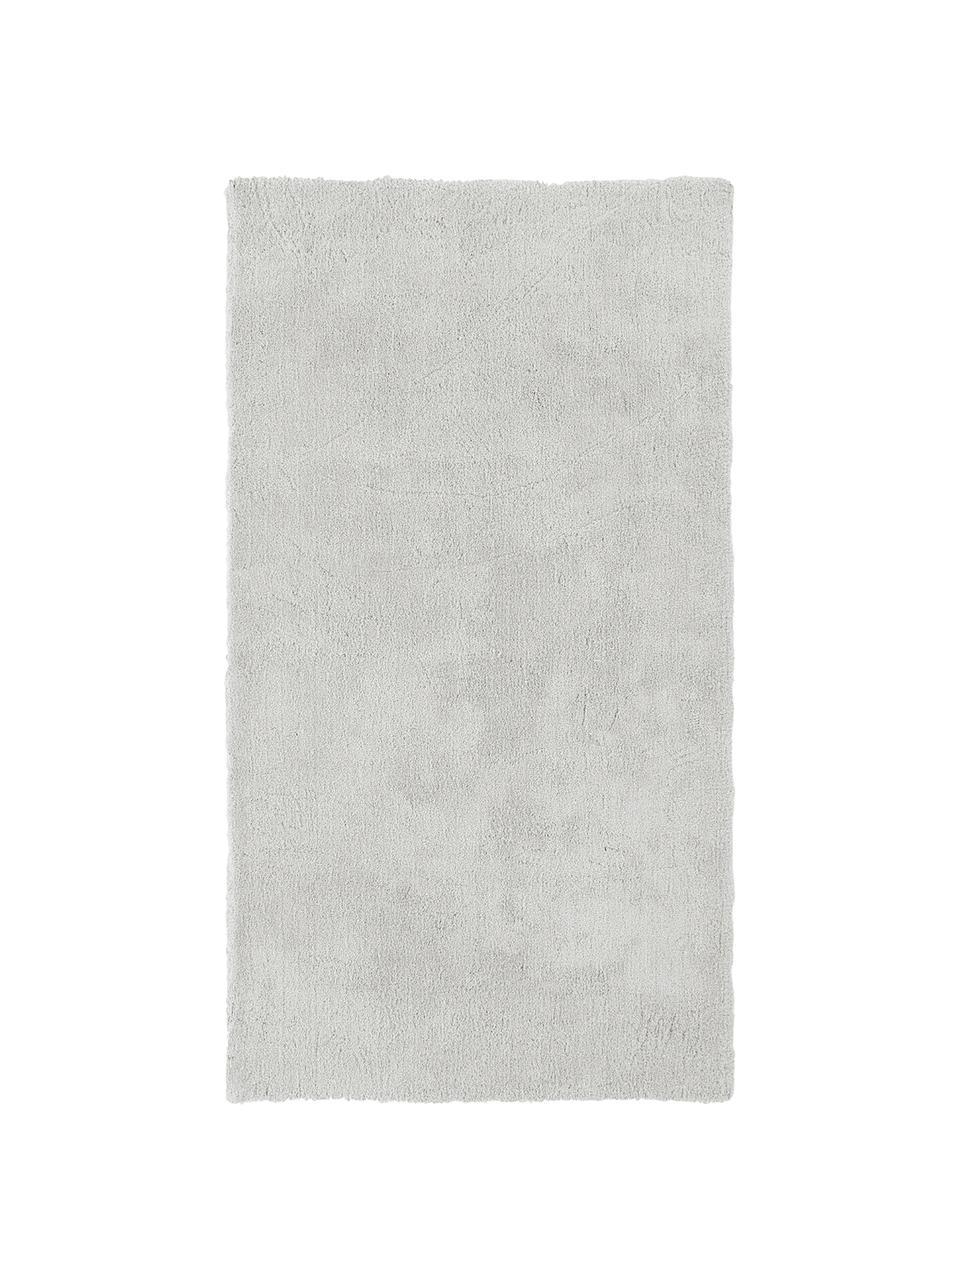 Tappeto morbido a pelo lungo grigio chiaro-beige Leighton, Retro: 70% poliestere, 30% coton, Grigio chiaro, Larg. 120 x Lung. 180 cm (taglia S)